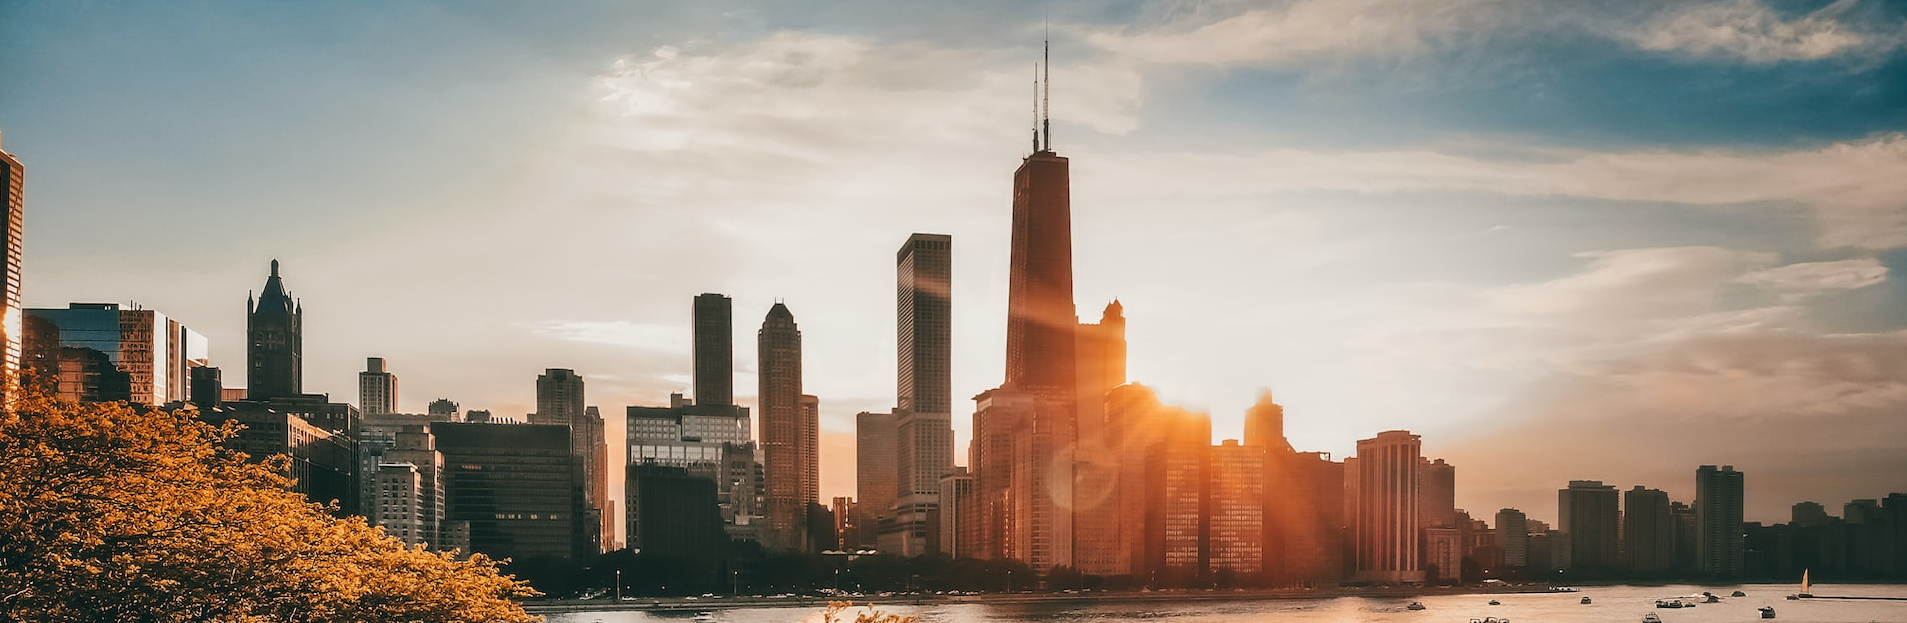 أفق شيكاغو عند غروب الشمس